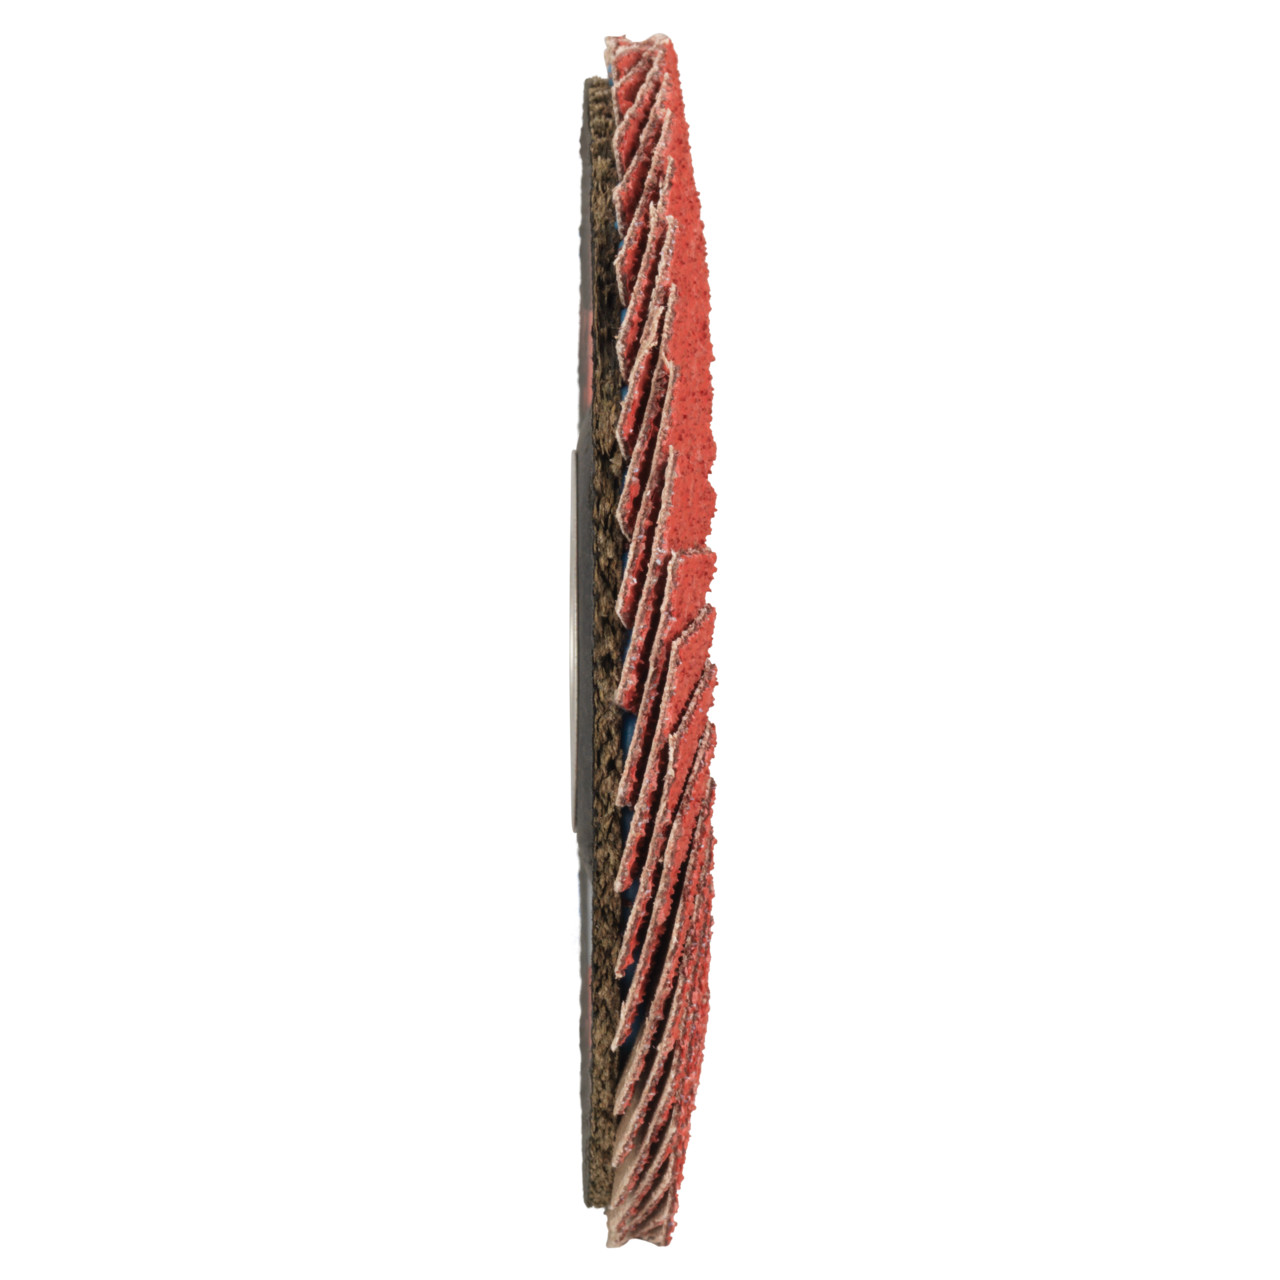 TYROLIT Fächerscheibe DxH 115x22,23 CERAMIC für Edelstahl, P80, Form: 28A - gerade Ausführung (Glasfaserträgerkörperausführung), Art. 34166687